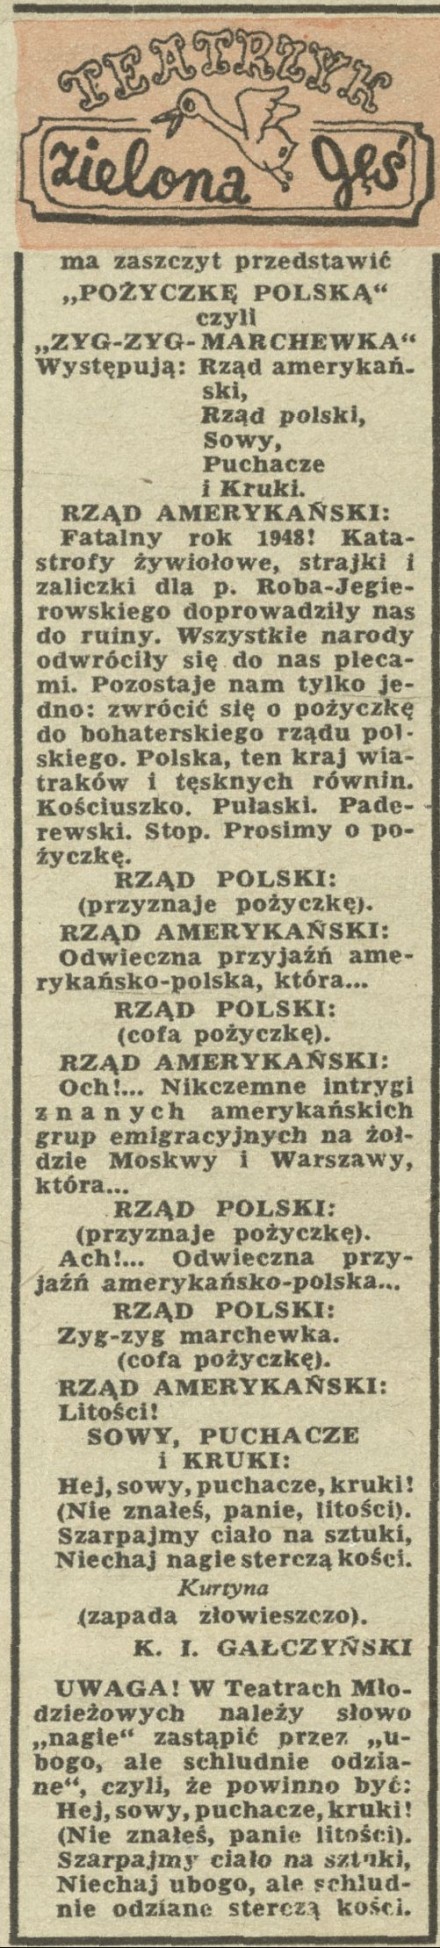 Pożyczka Polska czyli Zyg-zyg marchewka